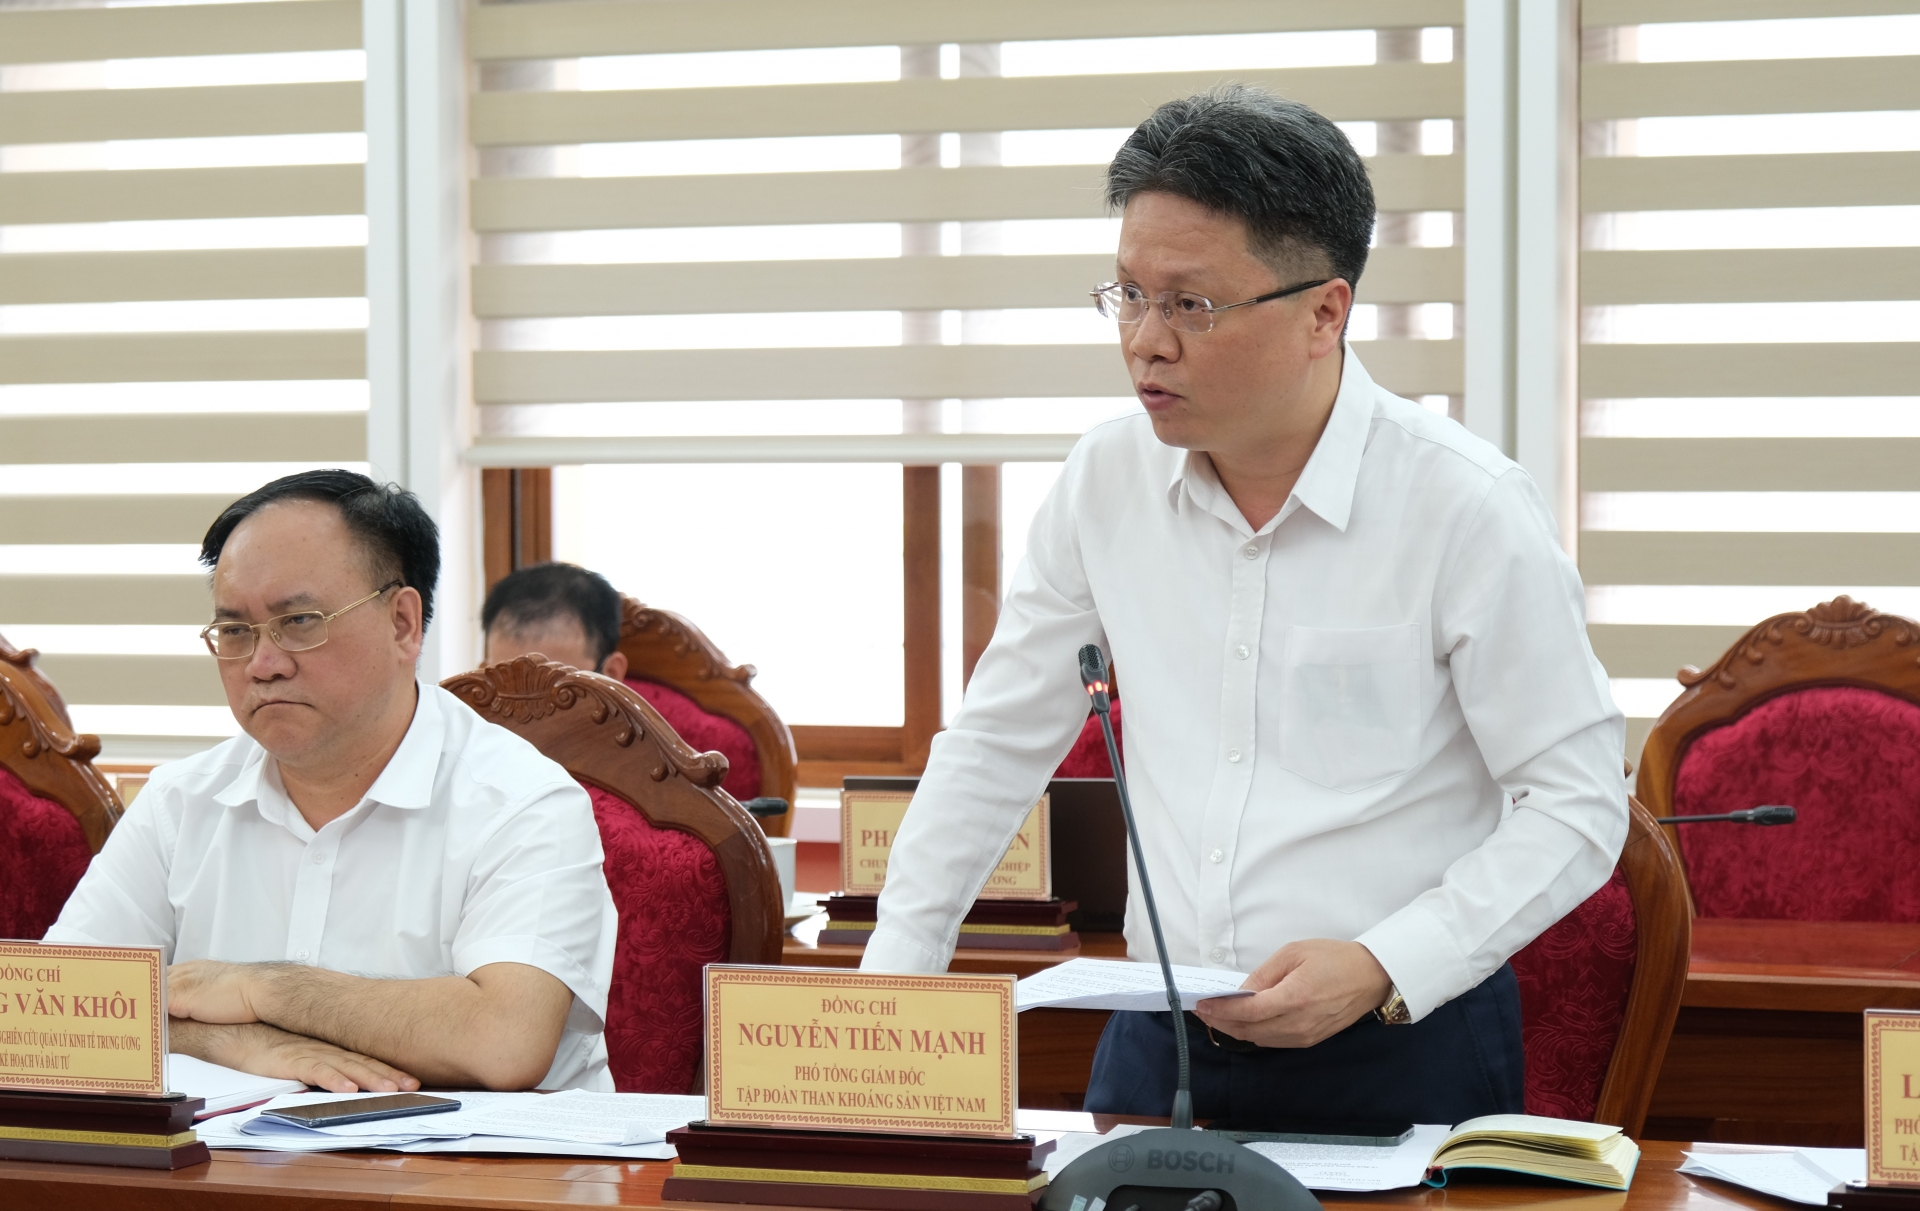 Đồng chí Nguyễn Tiến Mạnh - Phó Tổng Giám đốc Tập đoàn Công nghiệp Than - Khoáng sản Việt Nam ý kiến về công tác chuẩn bị, cũng như những khó khăn trong việc triển khai các dự án của Tập đoàn trên địa bàn tỉnh Lâm  